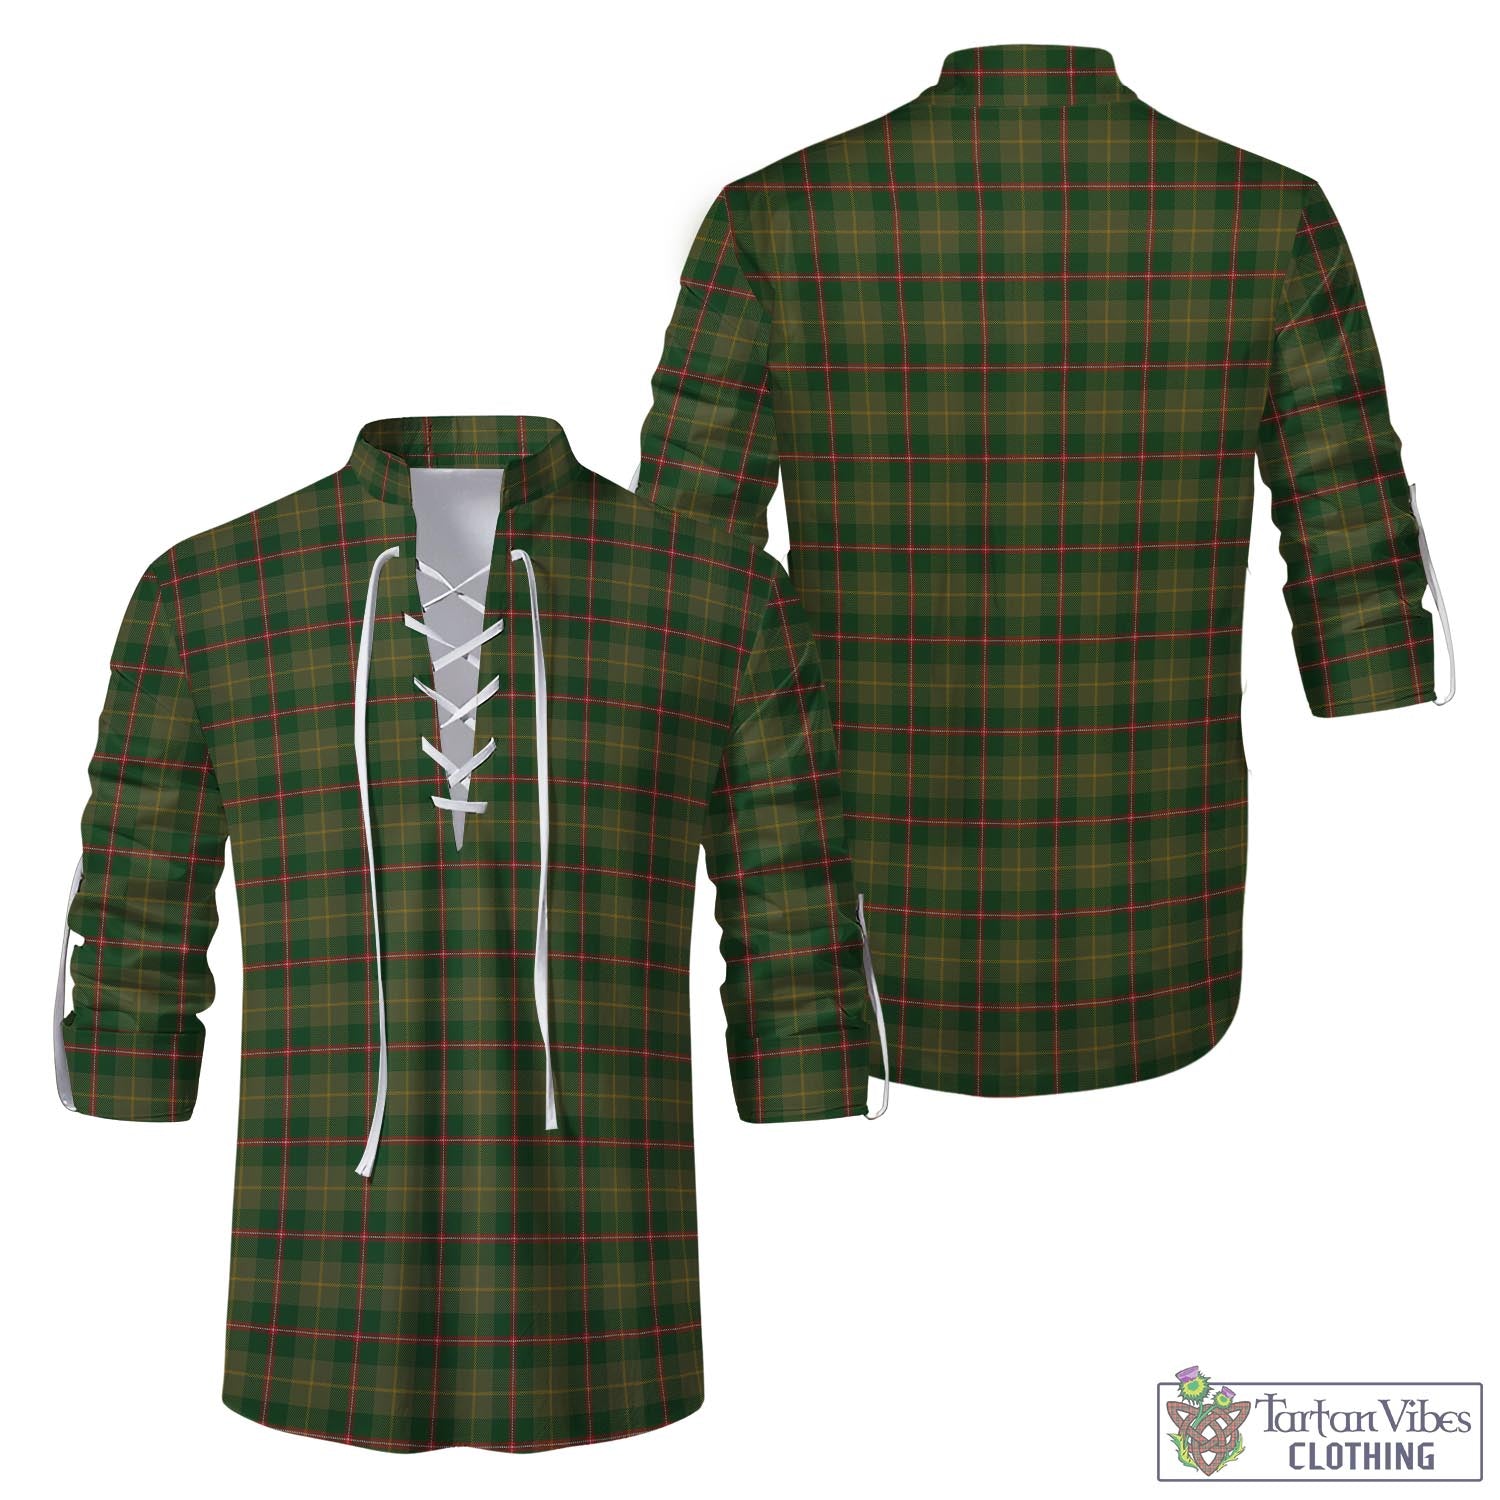 Tartan Vibes Clothing Symington Tartan Men's Scottish Traditional Jacobite Ghillie Kilt Shirt